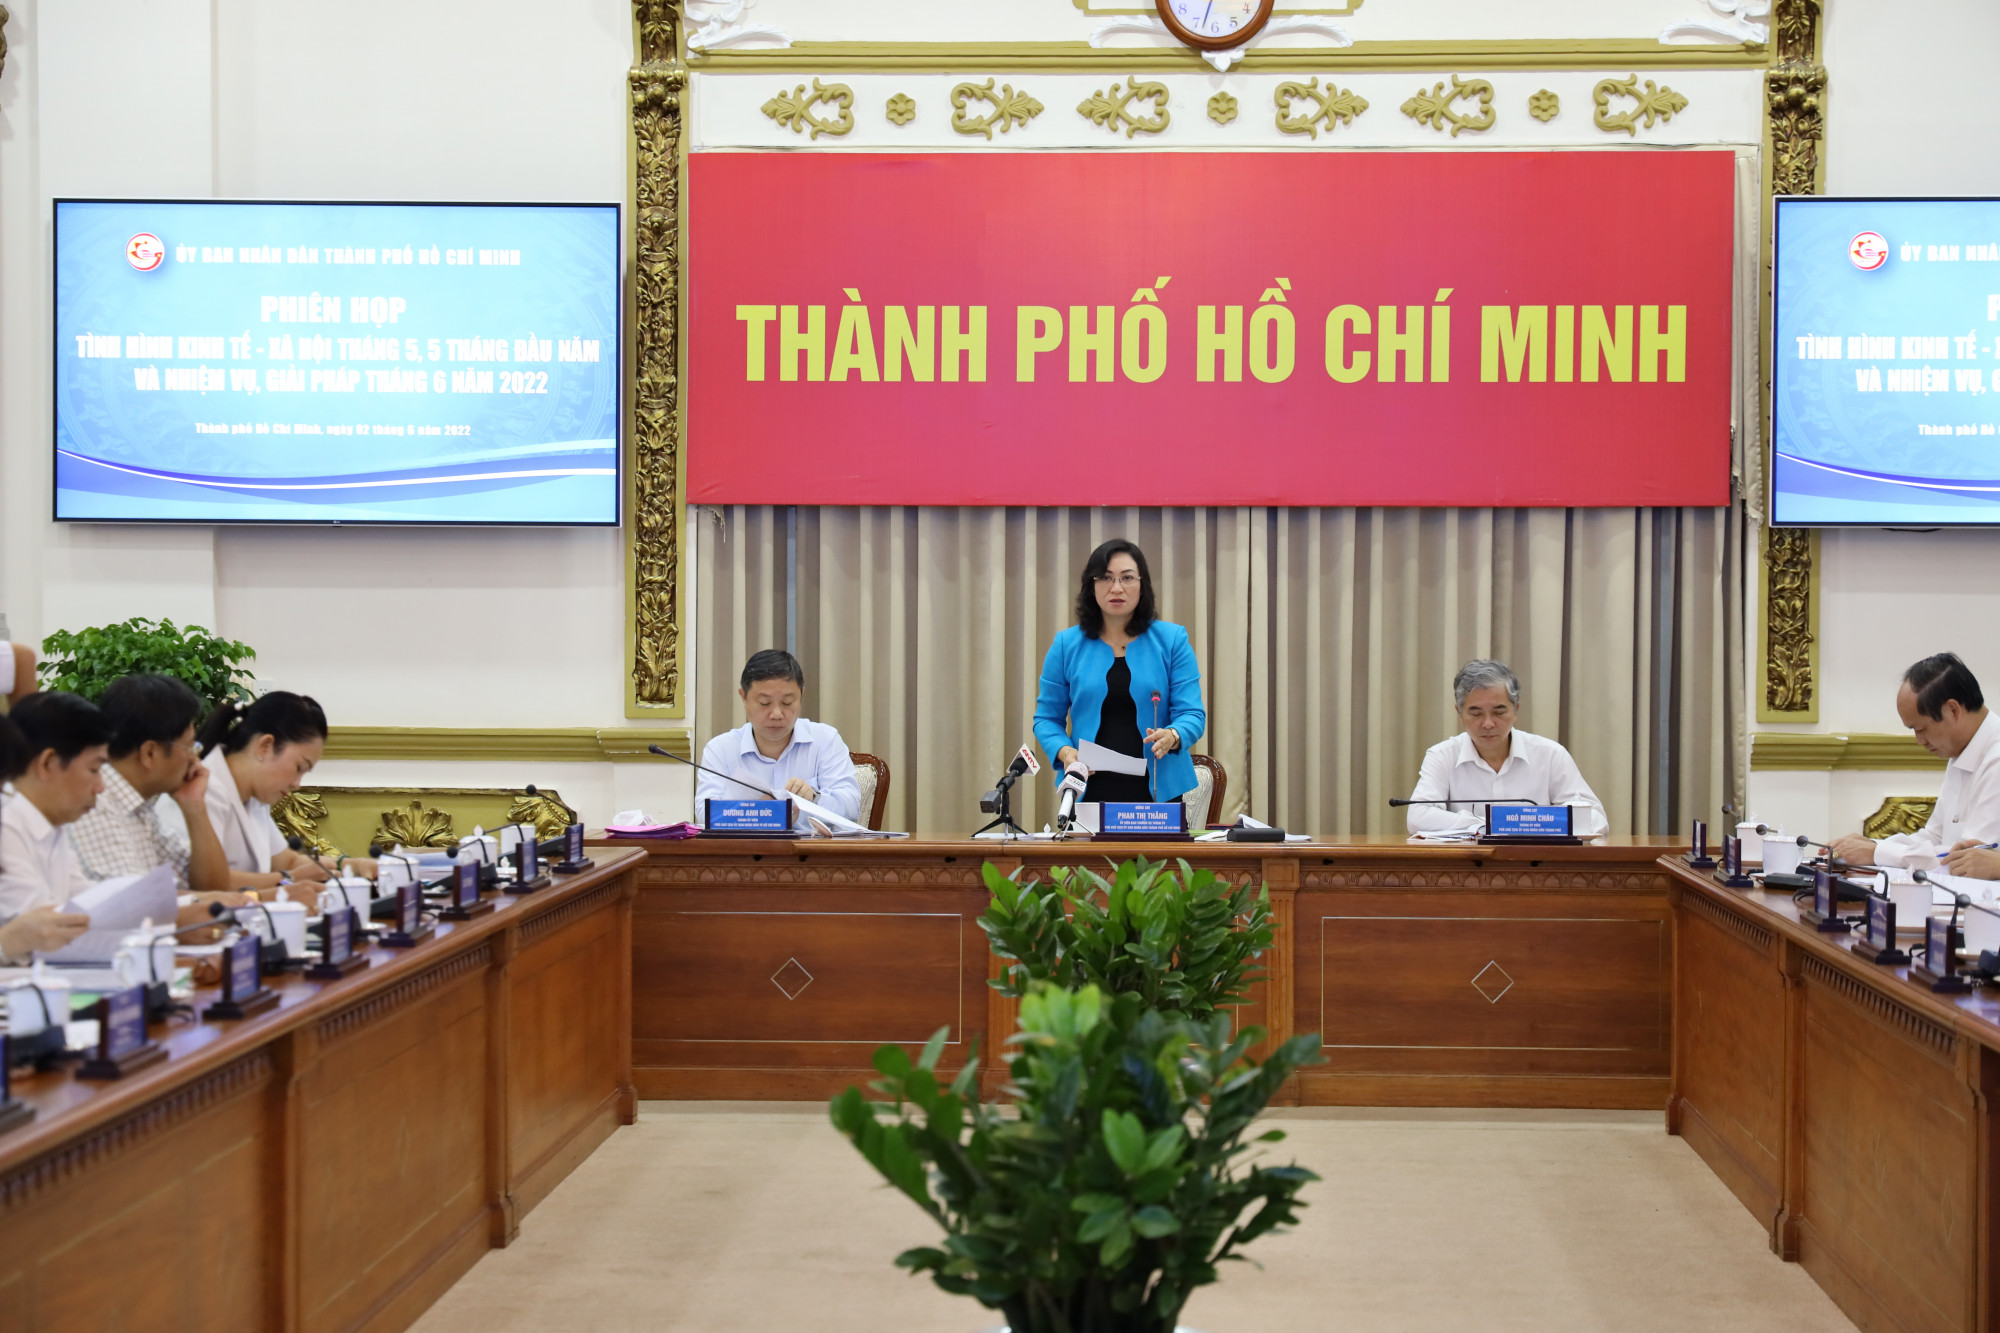 Phó chủ tịch UBND TPHCM Phan Thị Thắng chủ trì phiên họp sáng 2/6